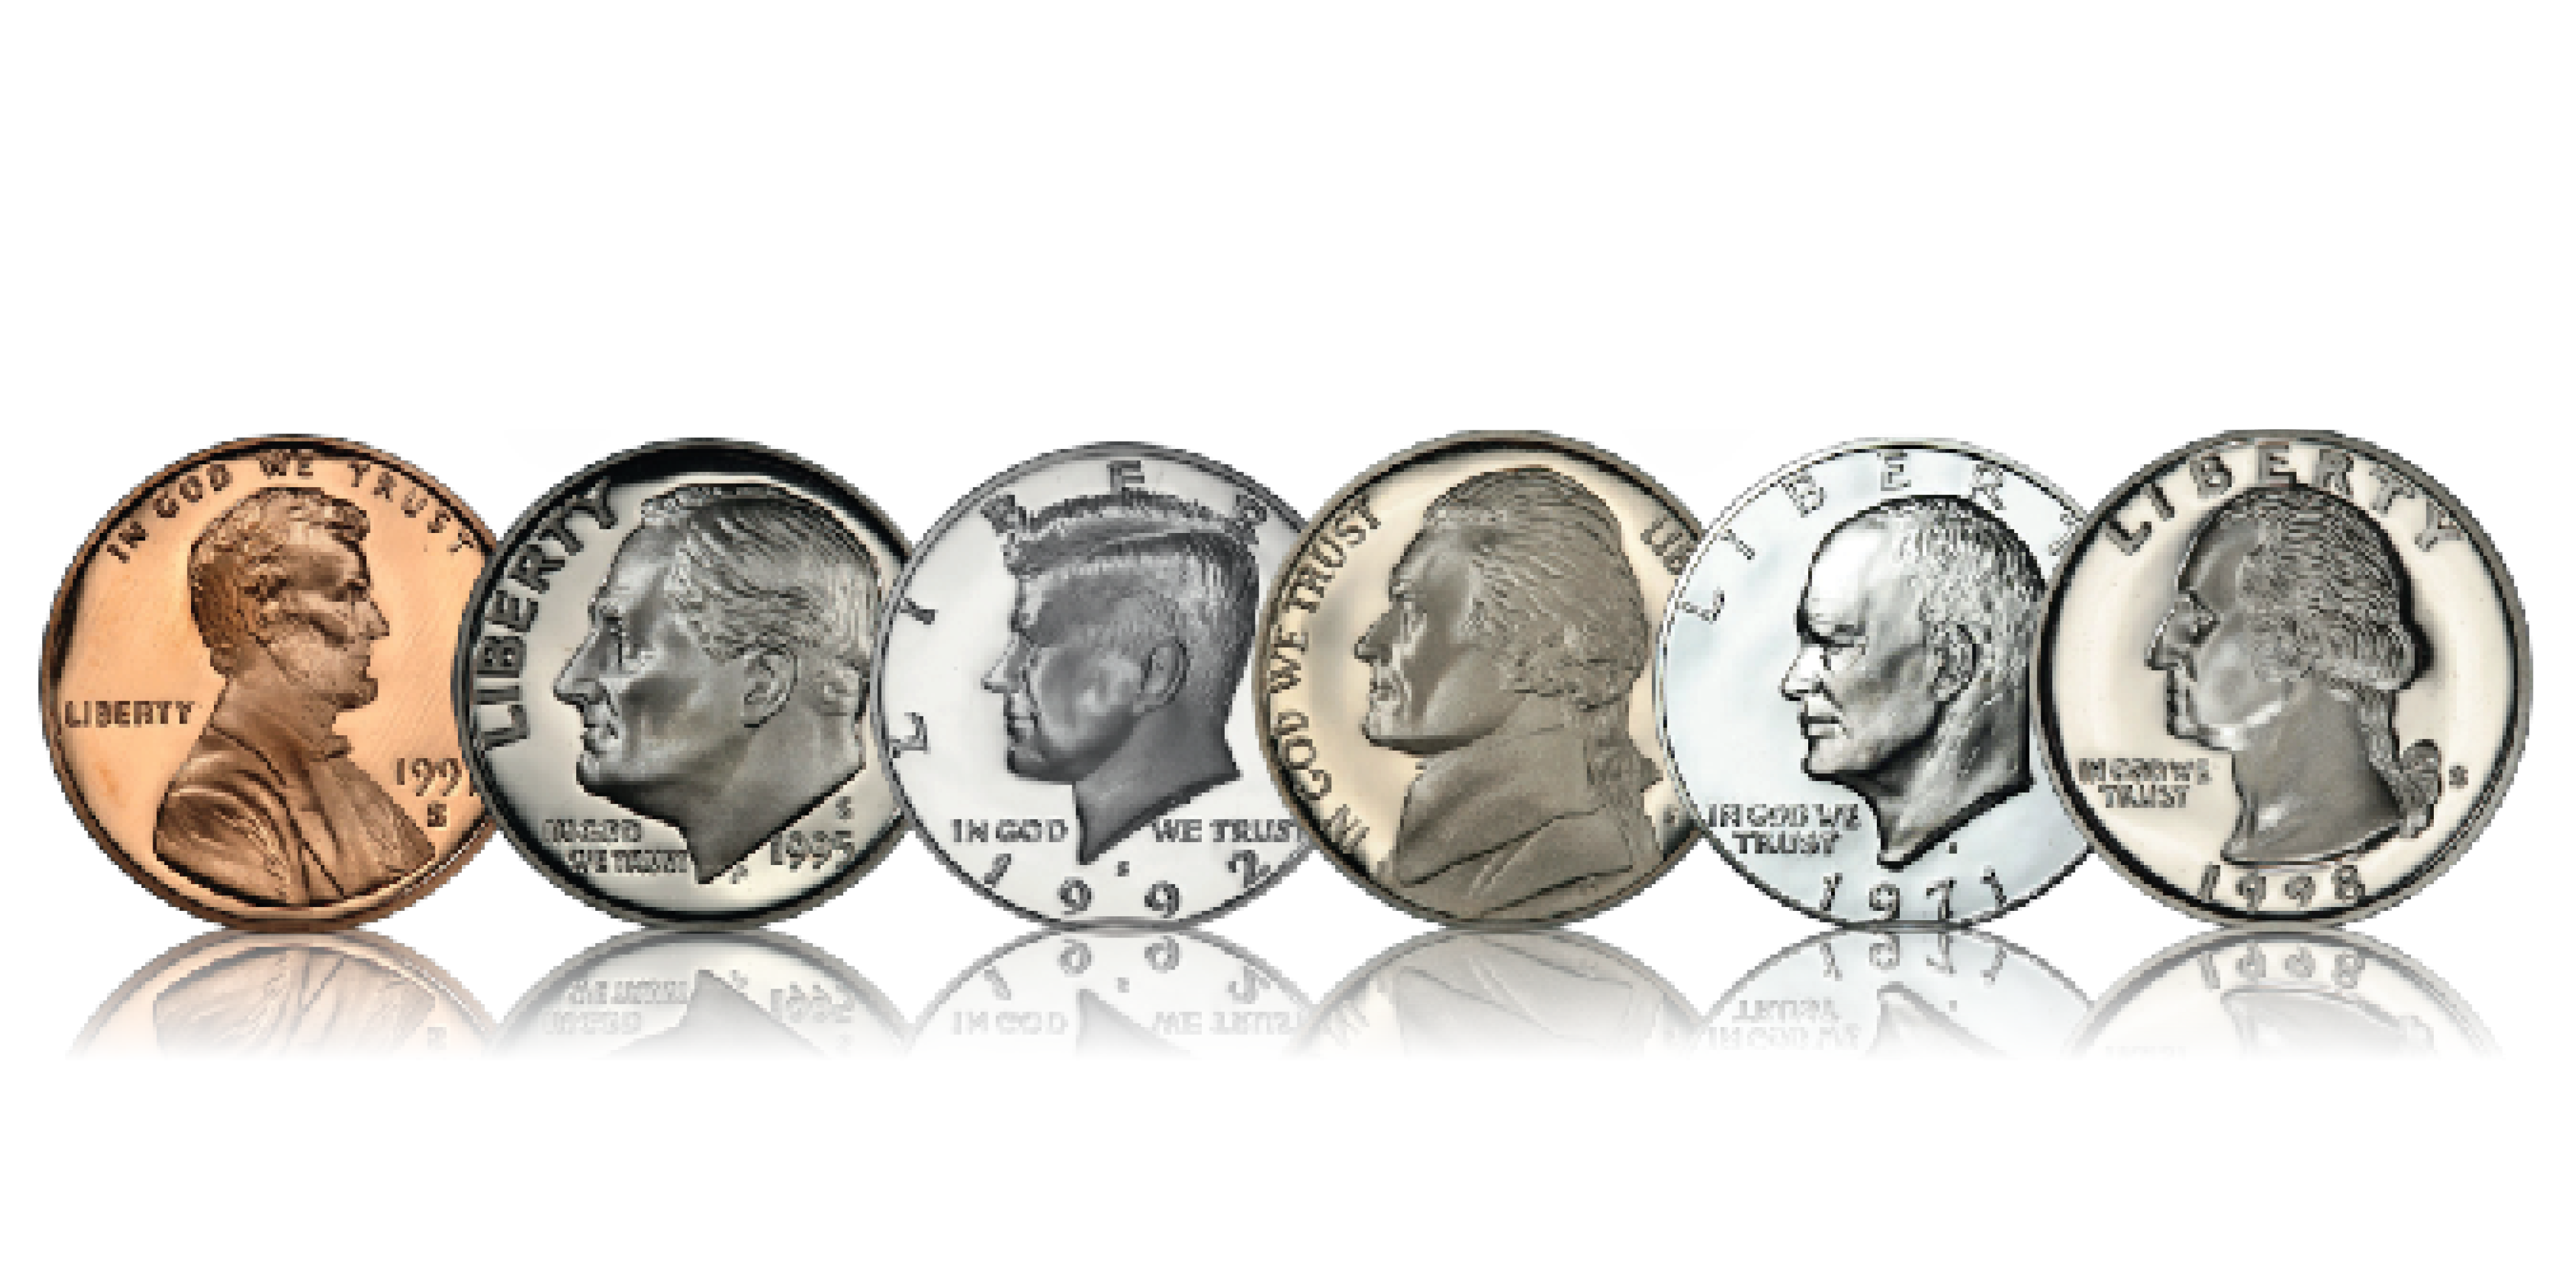 Nu kan du sikre dit helt eget komplette sæt med alle seks amerikanske cirkulationsmønter med portrætter af præsidenter. 